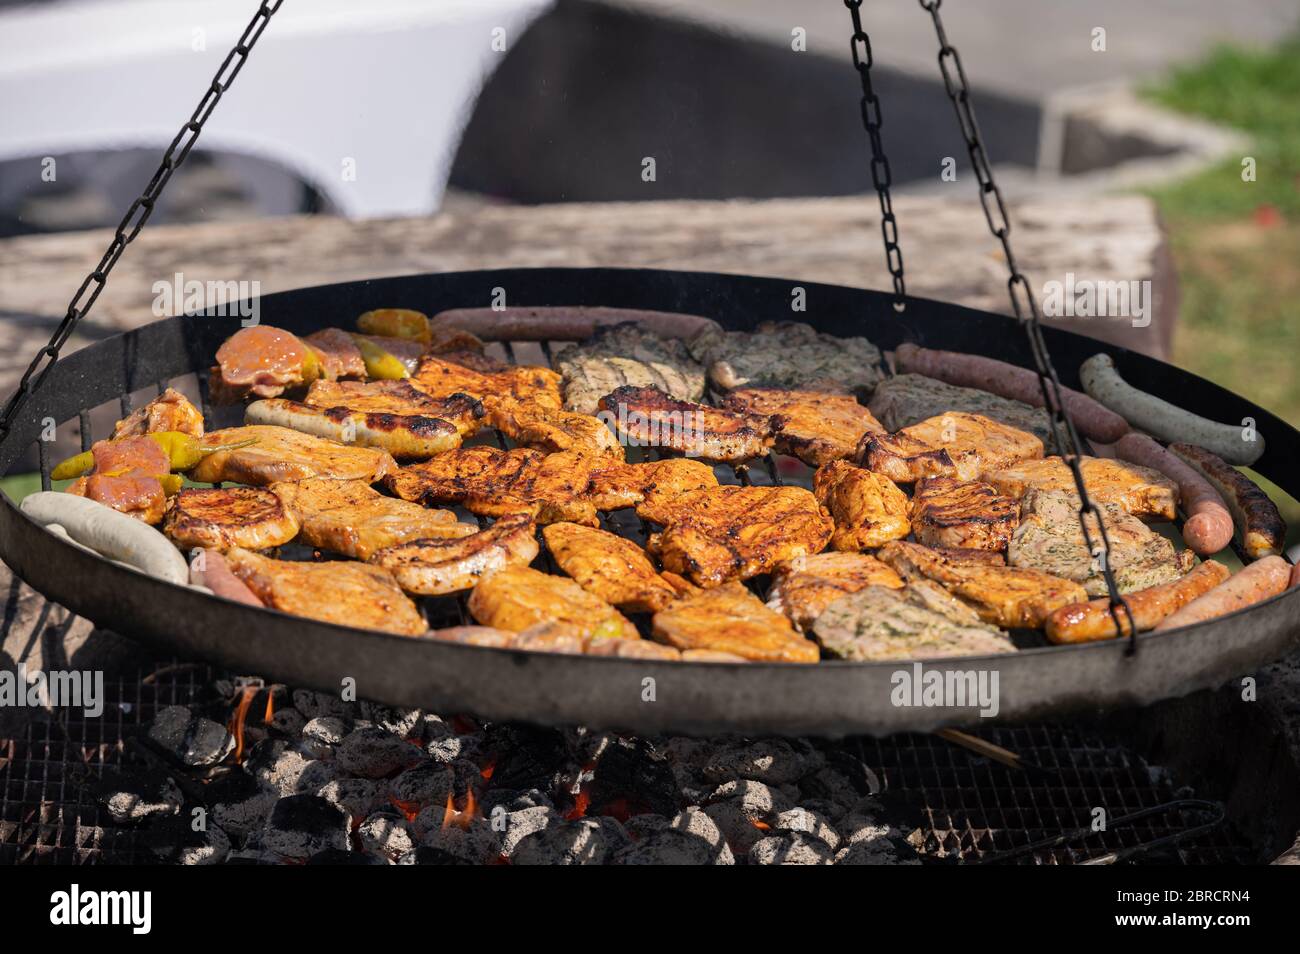 Food, Deutschland, May 20. Grillgut liegt auf einem Rost und grillt über einem Holzkohlegrill . Stock Photo